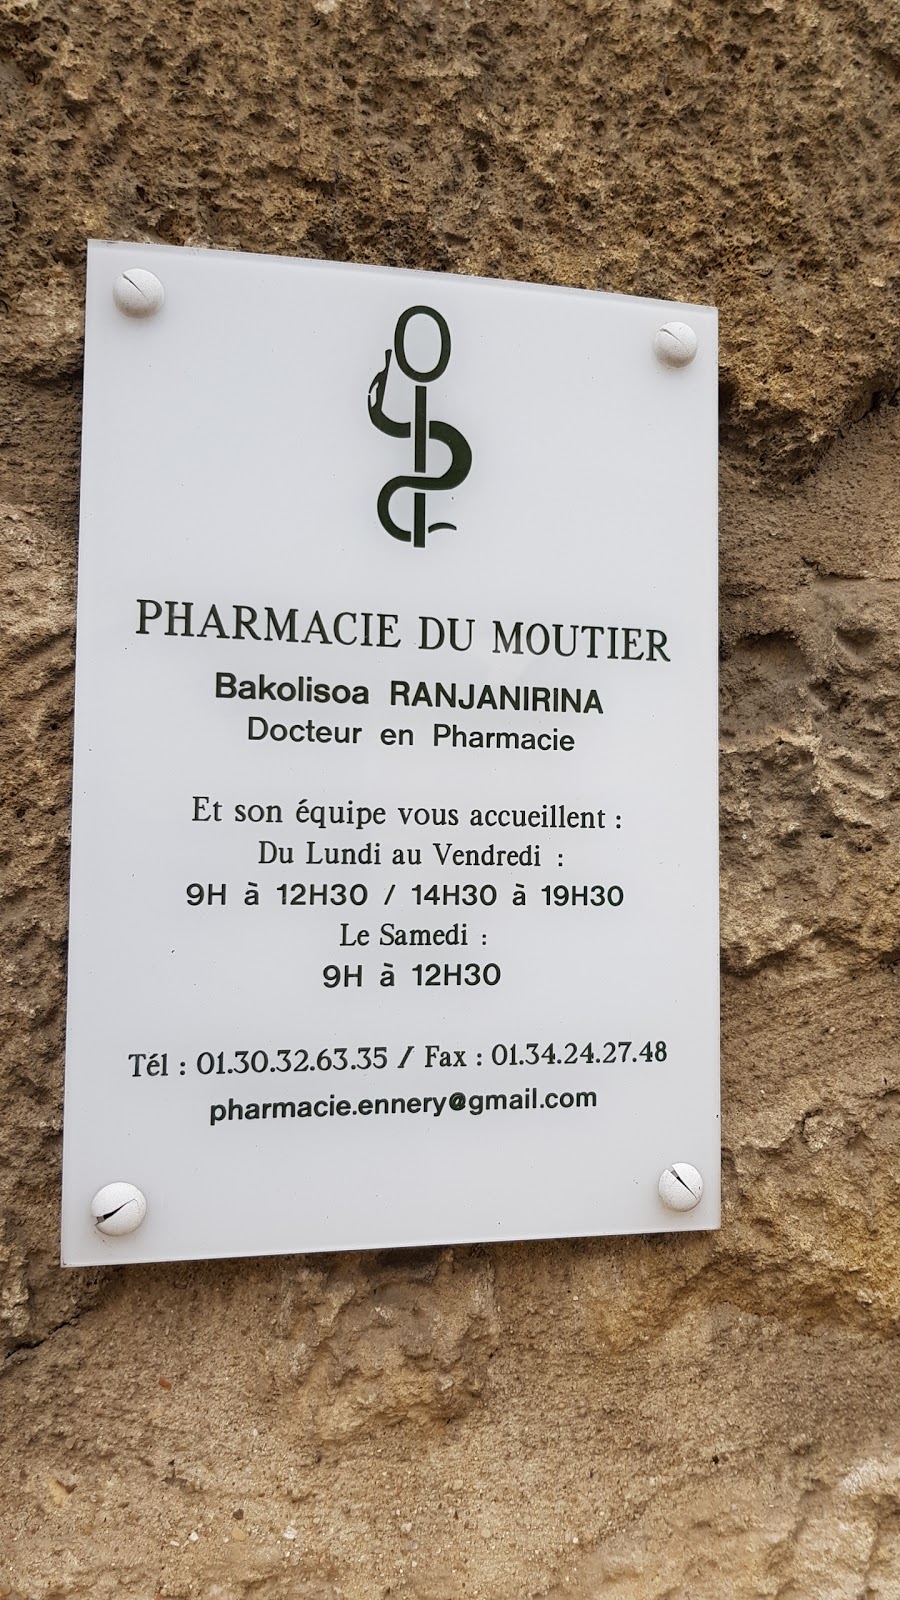 Pharmacie du moutier